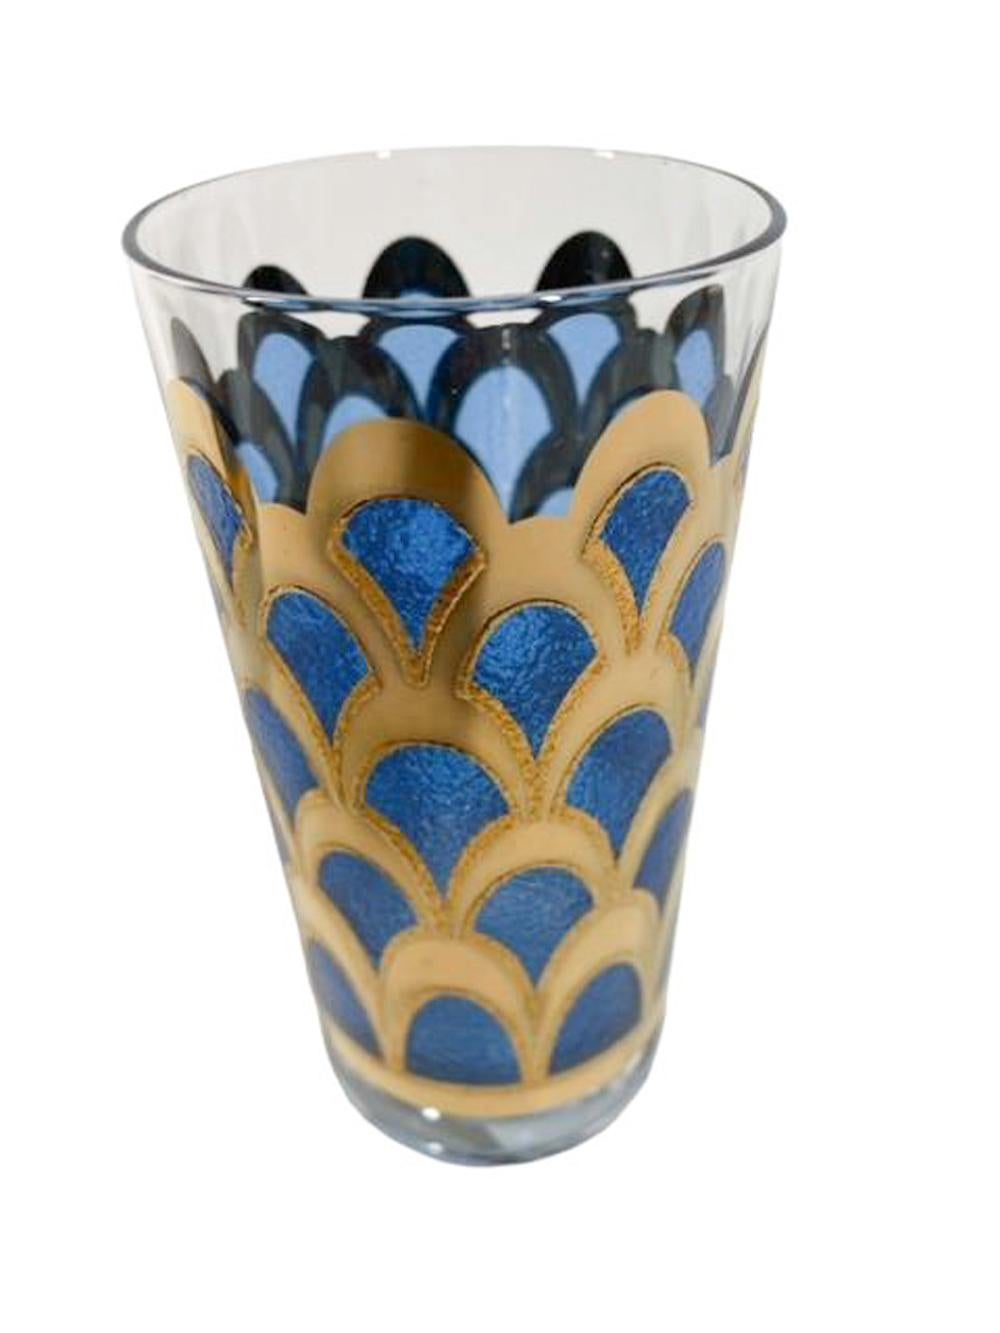 American Vintage Highball Glasses Designed by Irene Pasinski Translucent Blue & 22k Gold For Sale